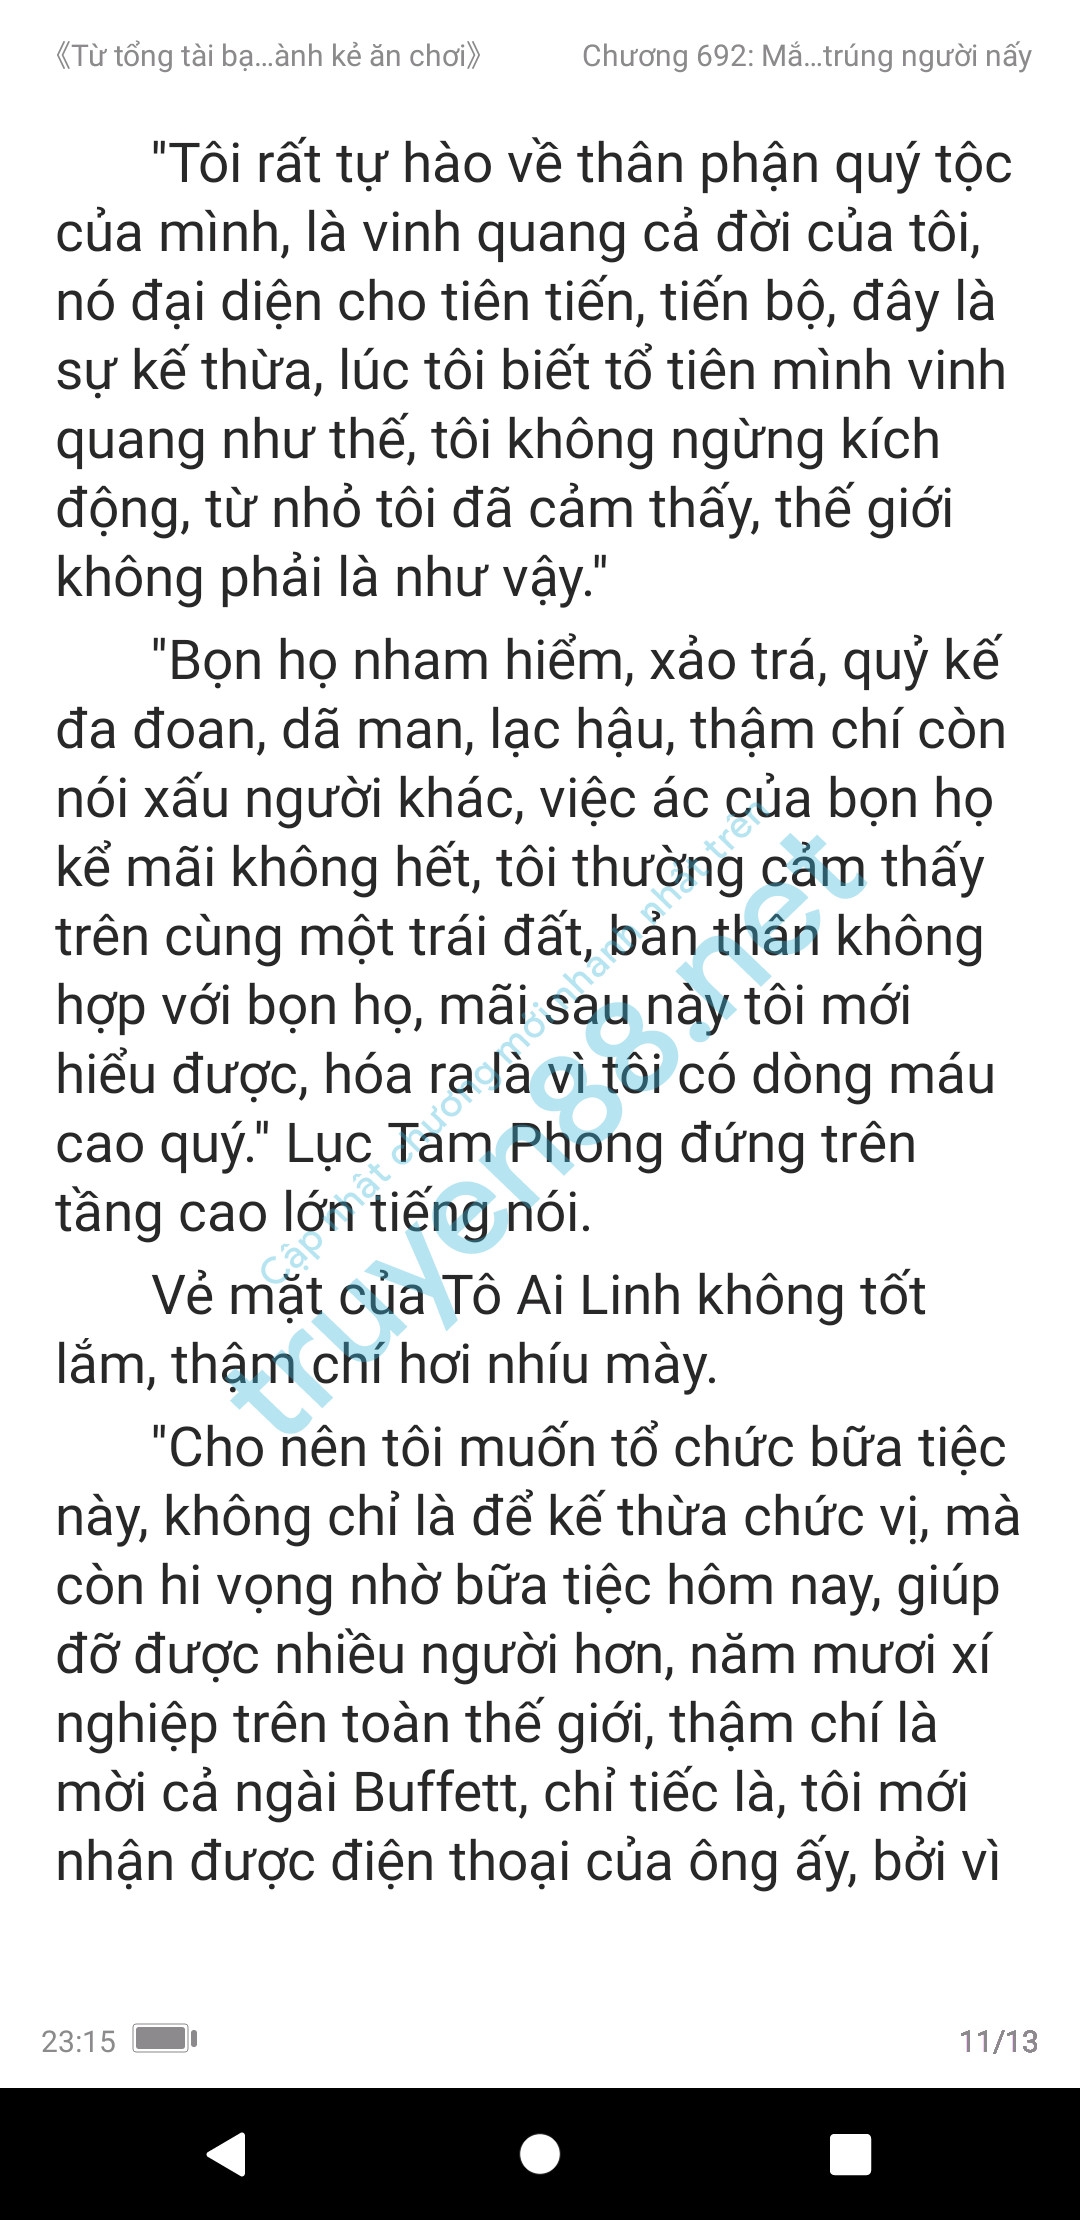 ke-an-choi-bien-tong-tai-692-0